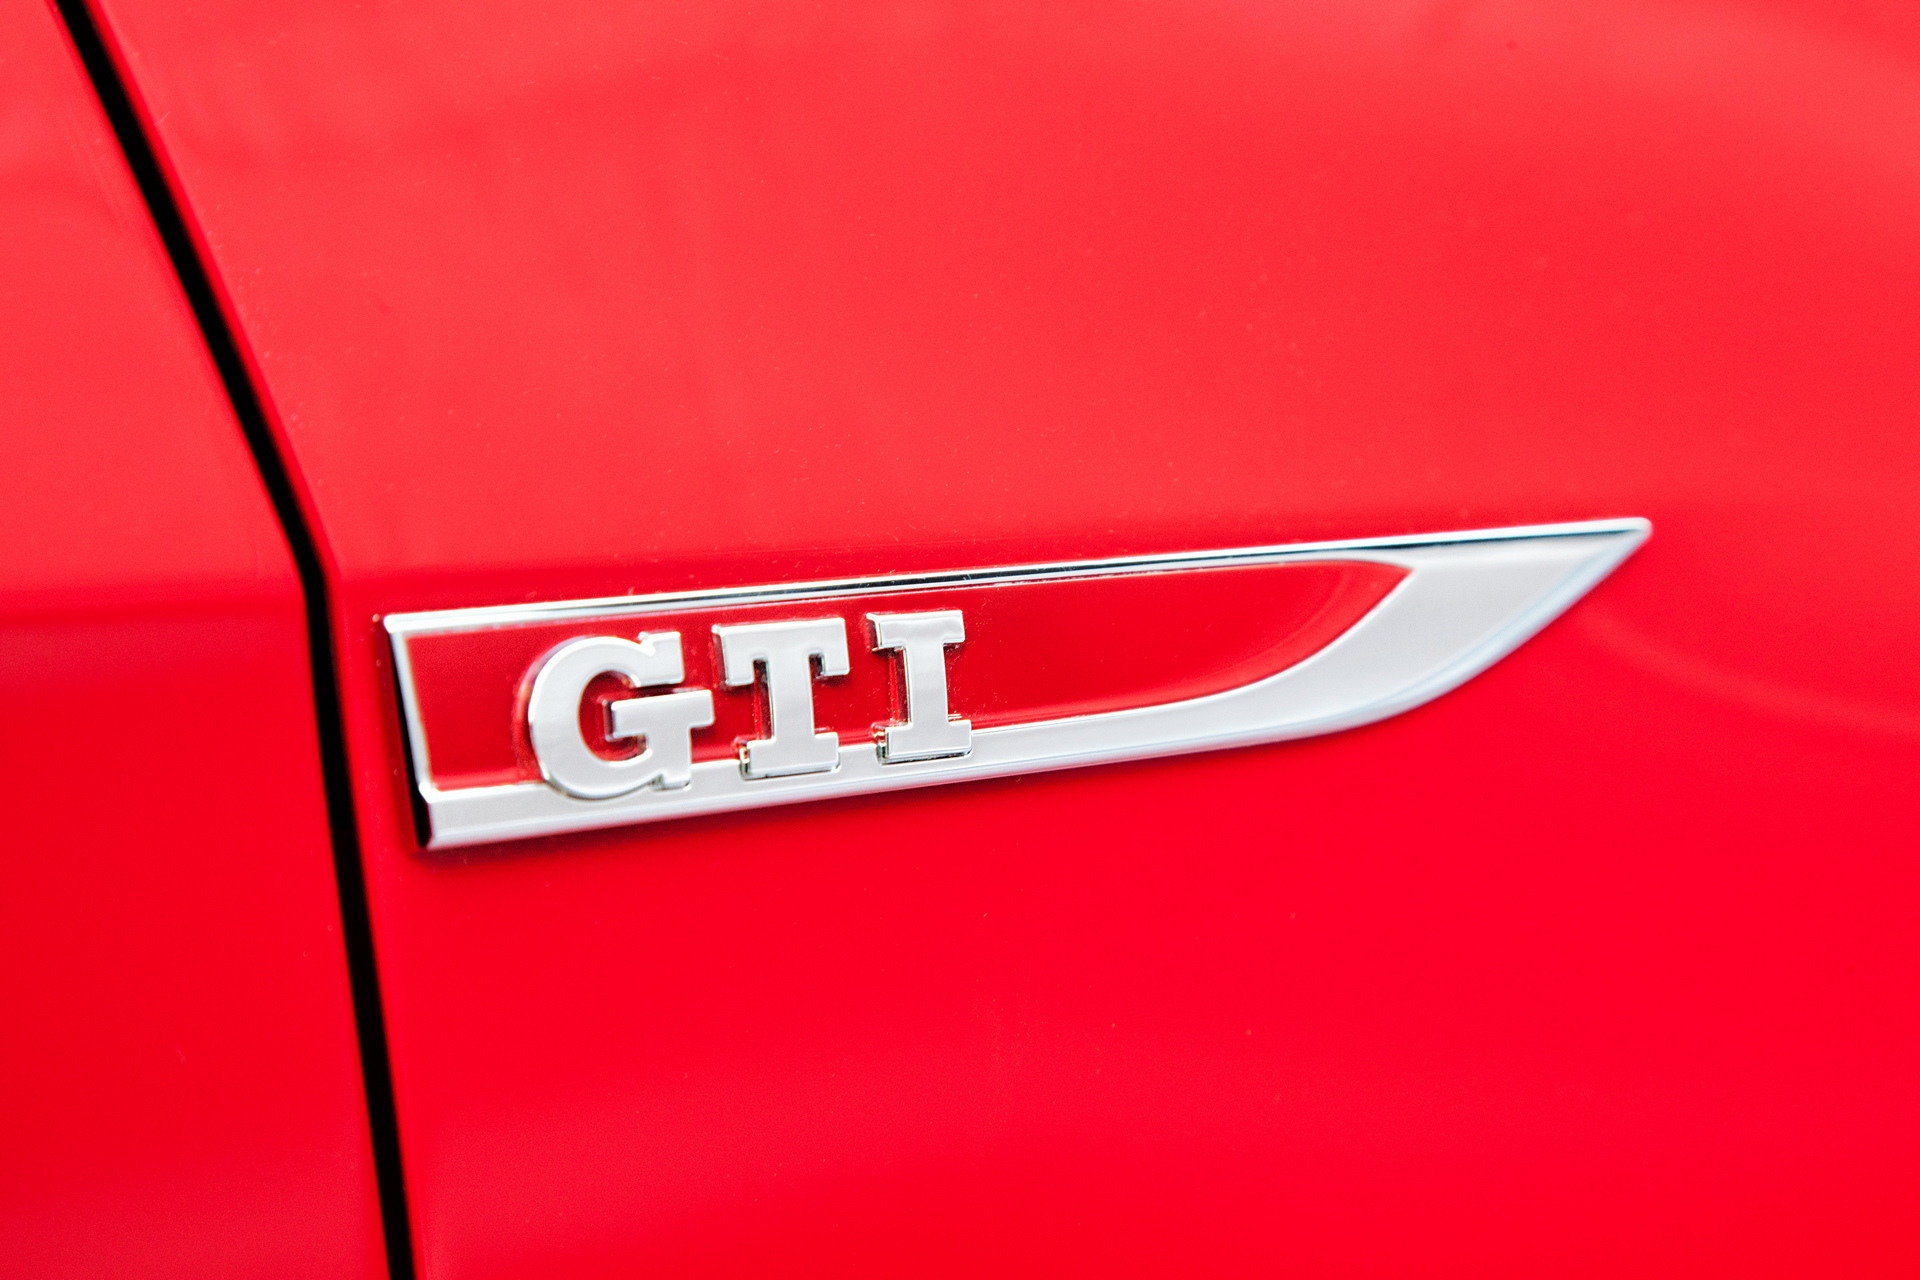 2016 Volkswagen Golf GTI © Volkswagen AG